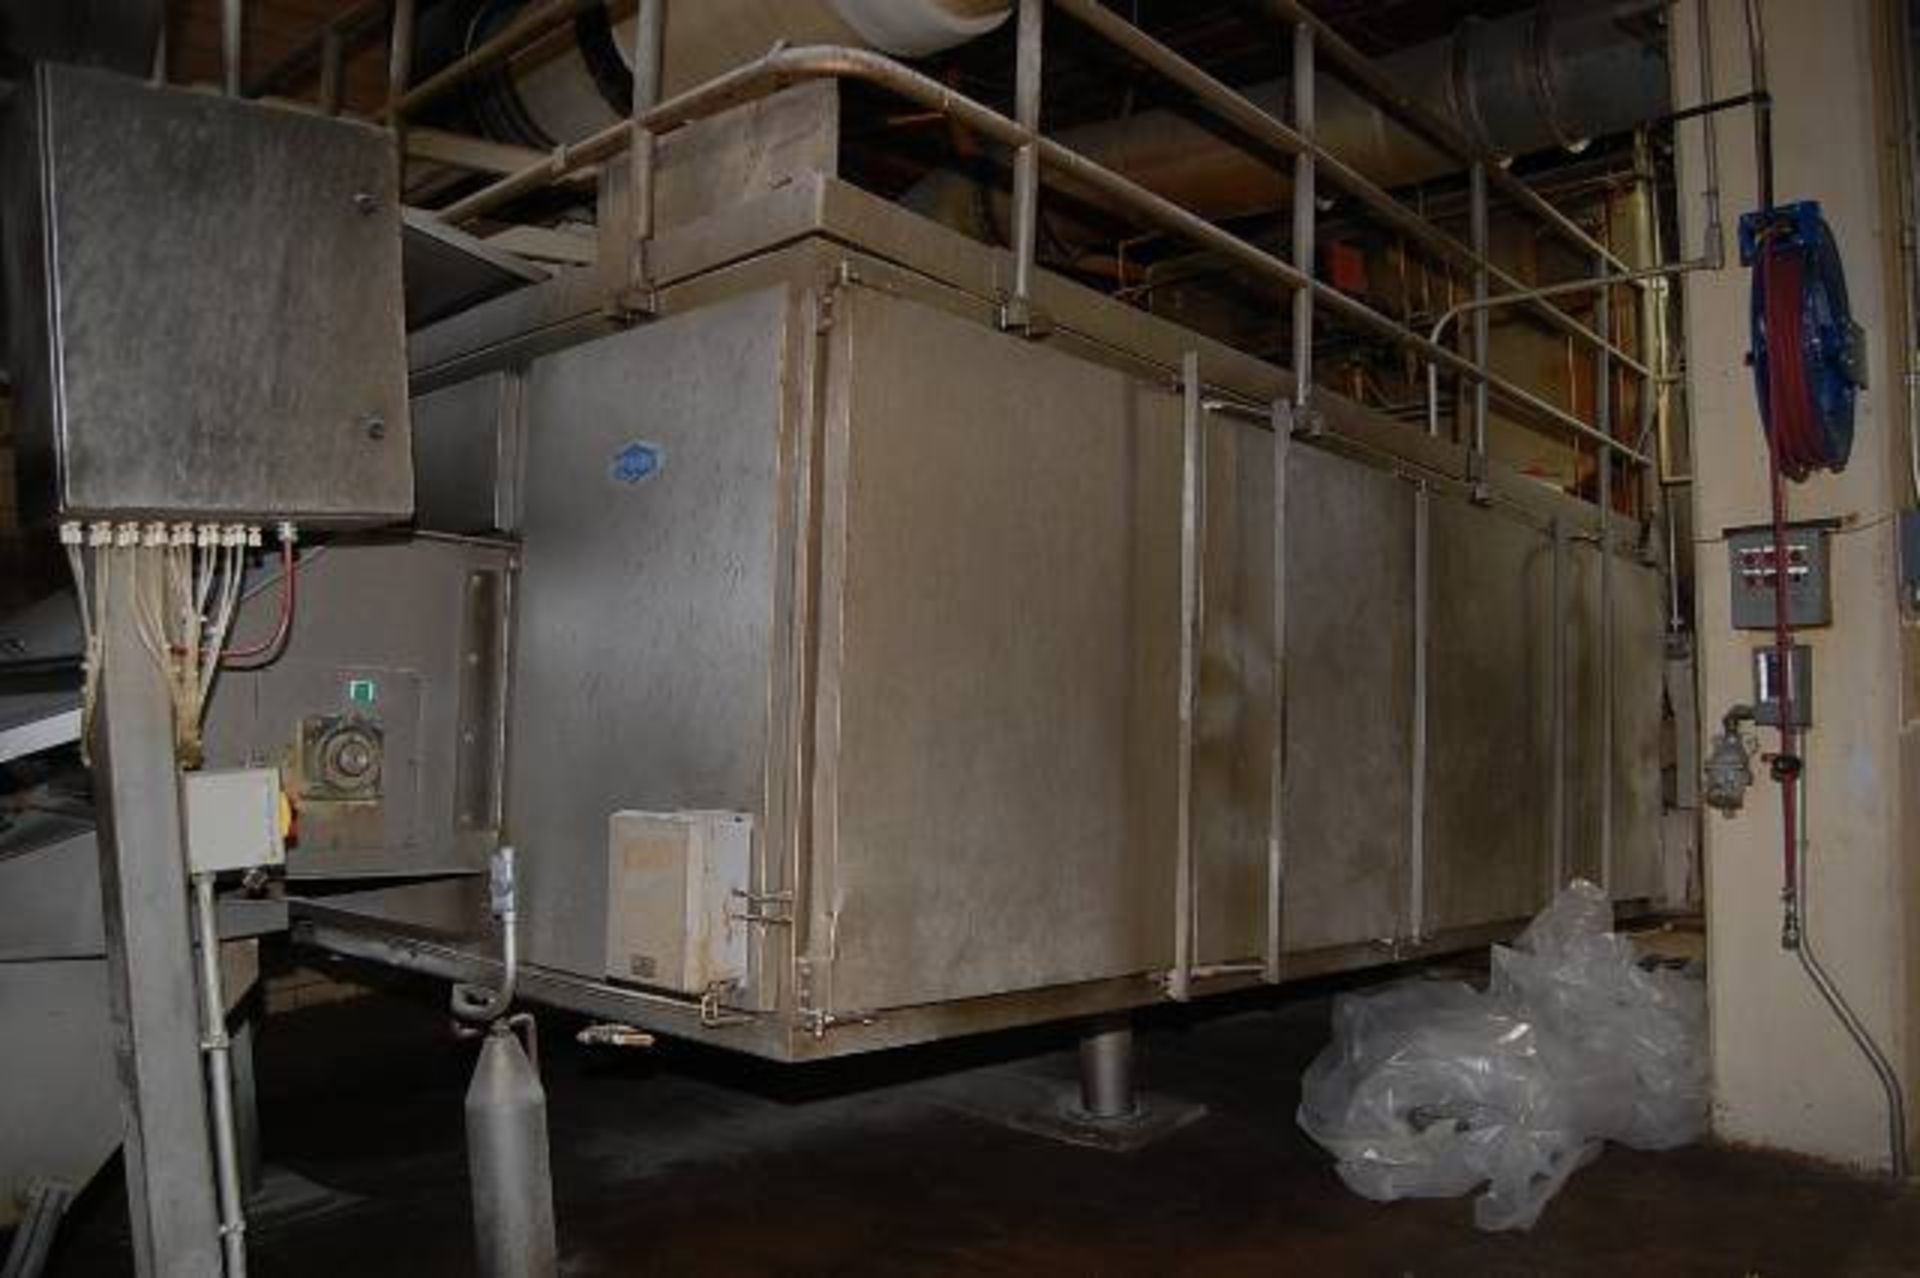 Proctor Cooling Section, Order #K94106 - Image 3 of 3